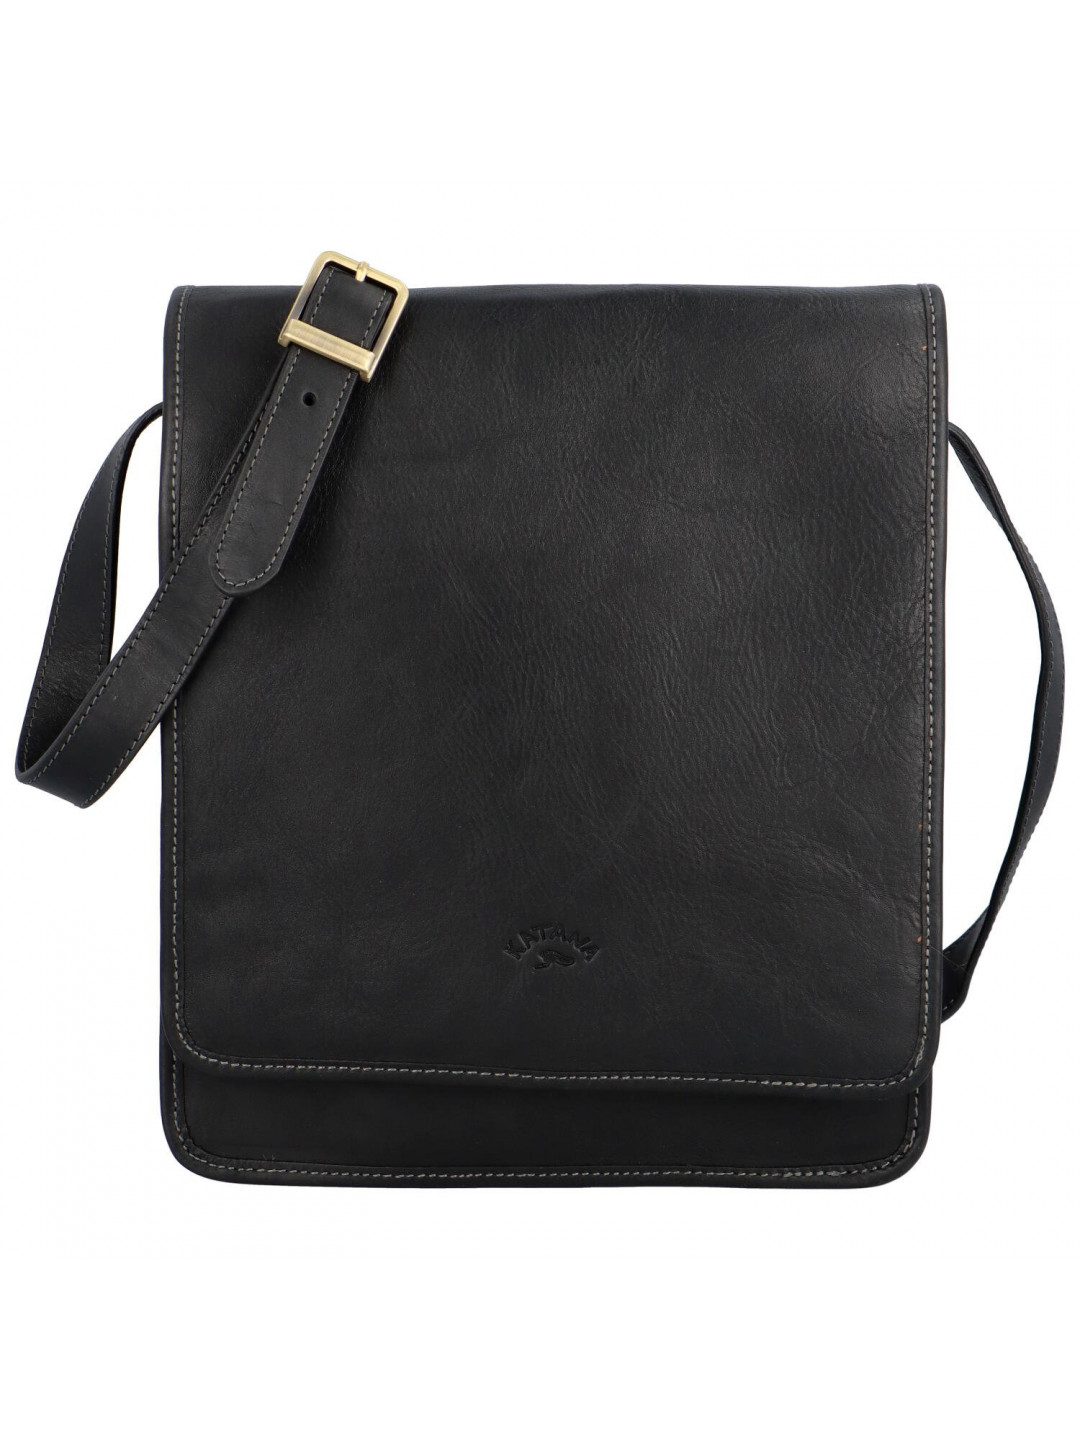 Luxusní pánská kožená taška Katana Eveto černá